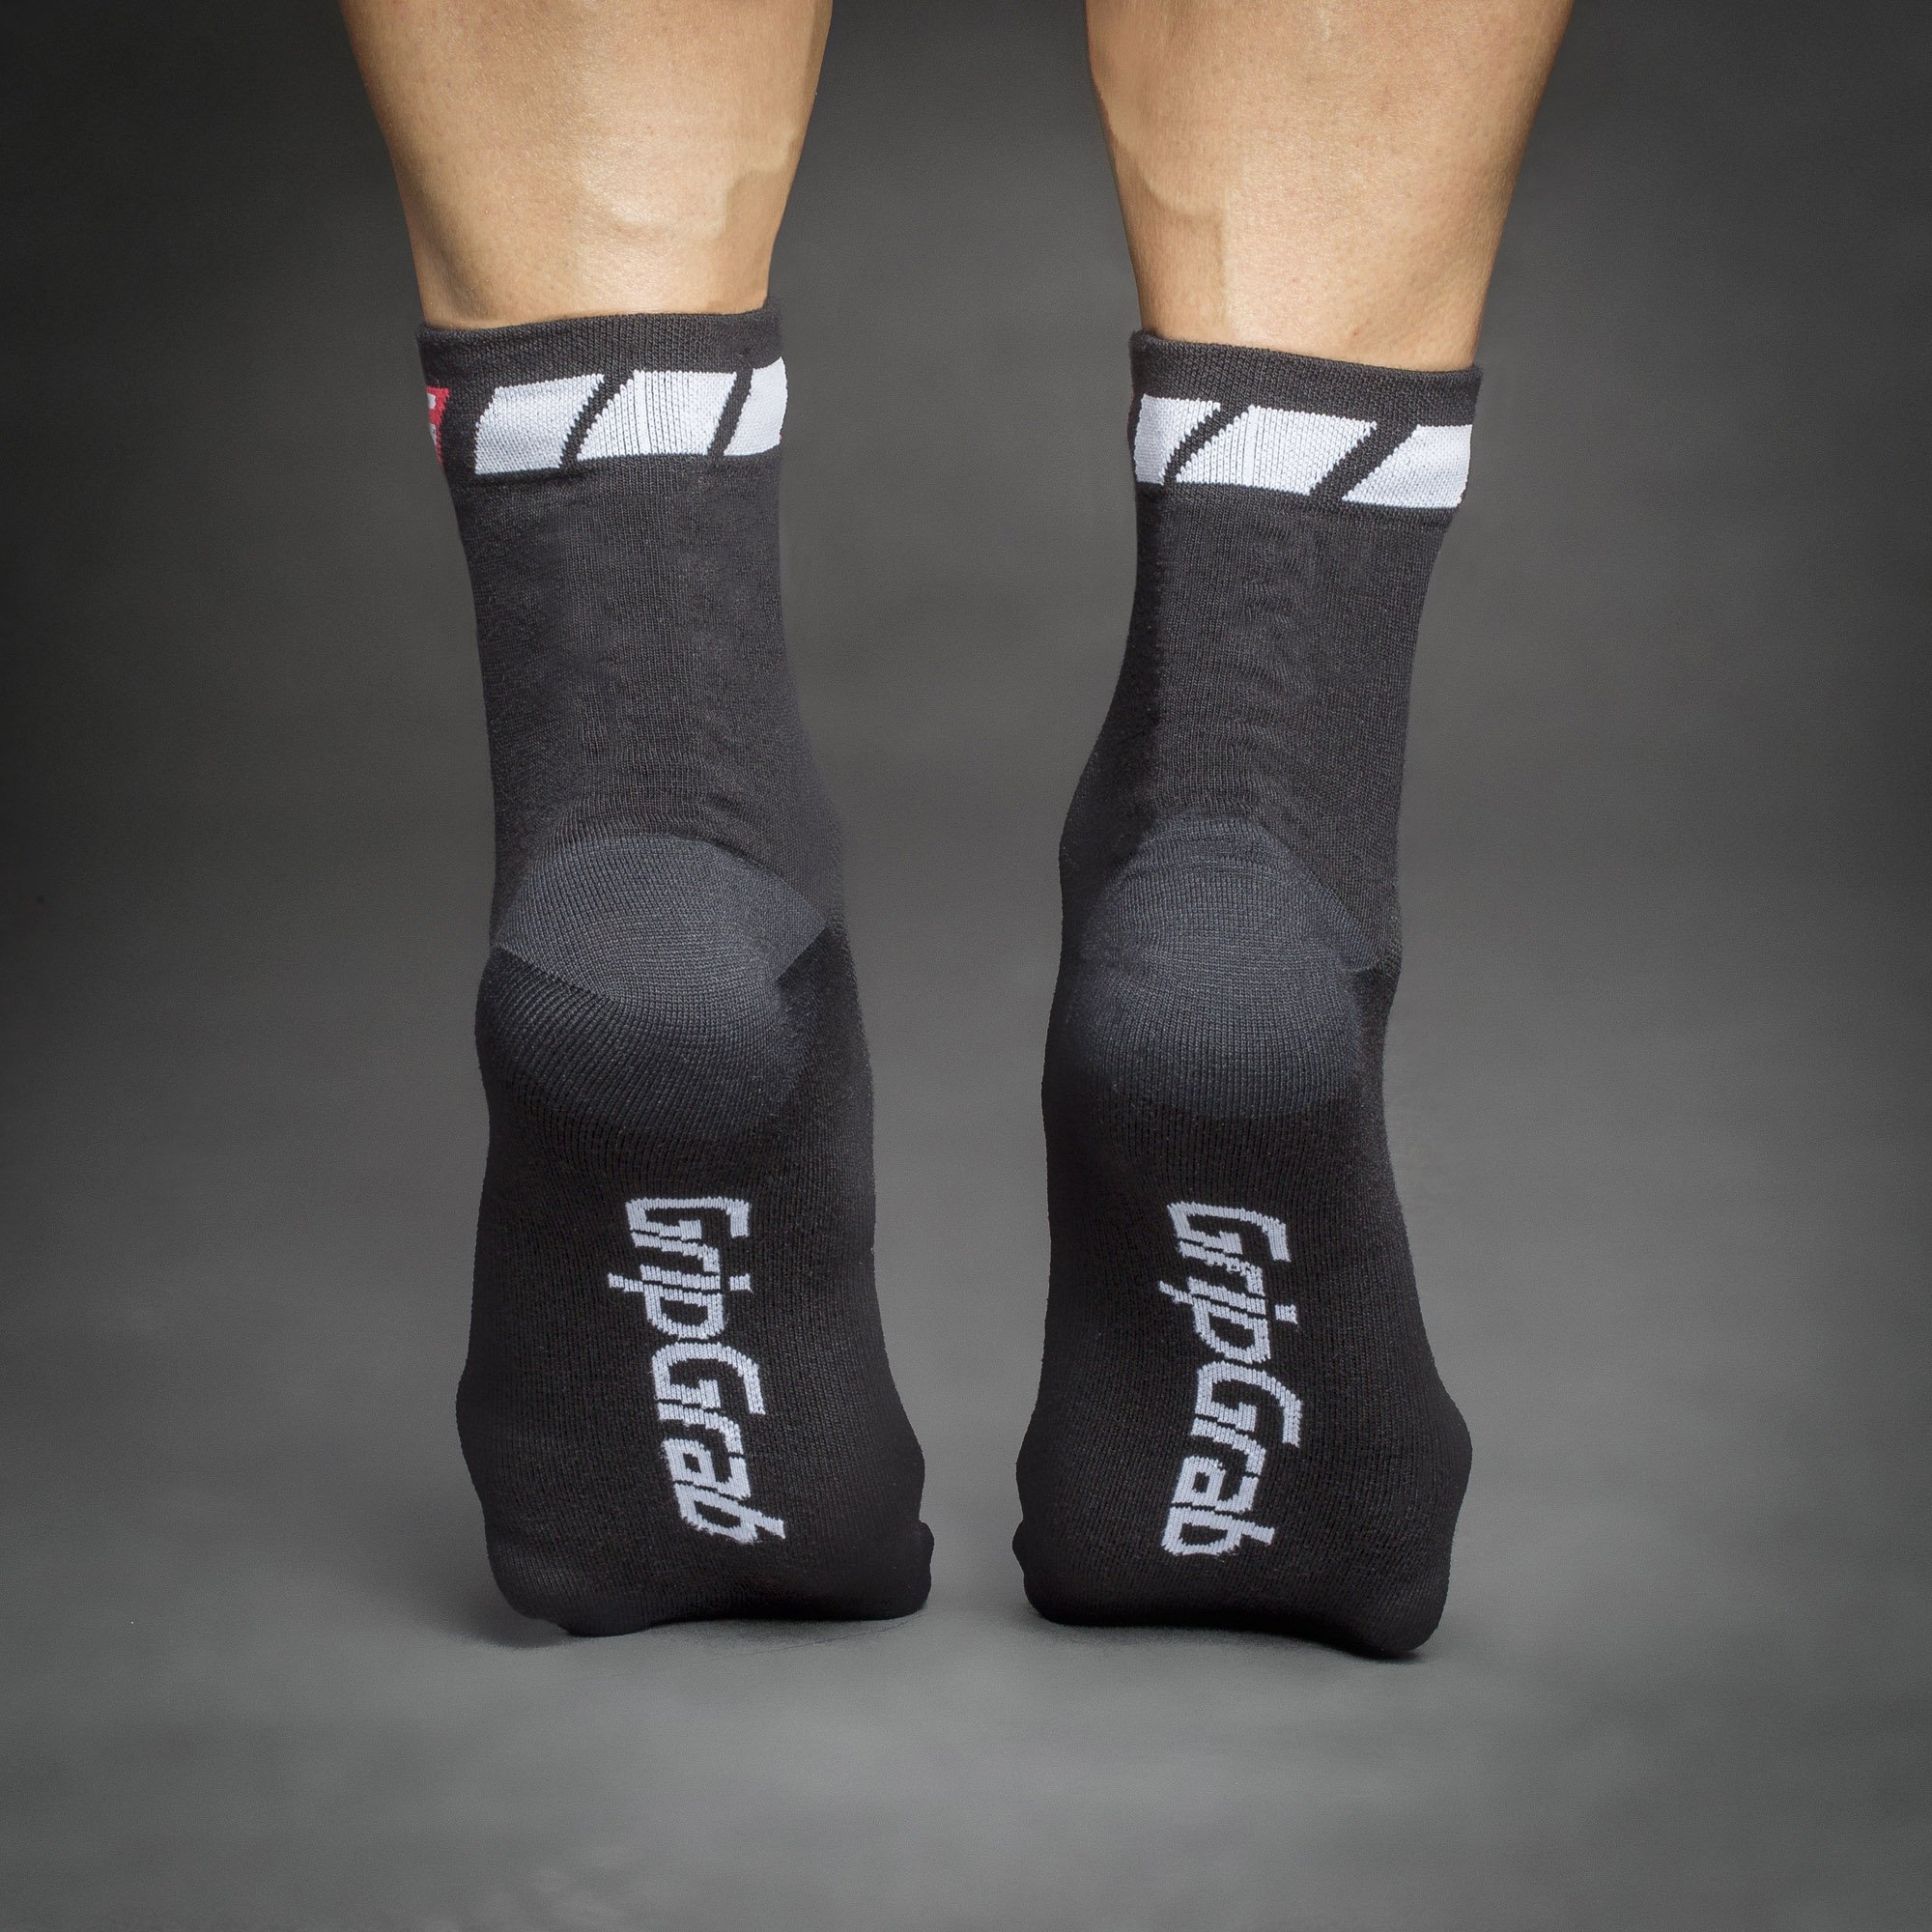 Beklædning - Sokker - GripGrab 3-Pack Regular Cut Summer Sock, sort